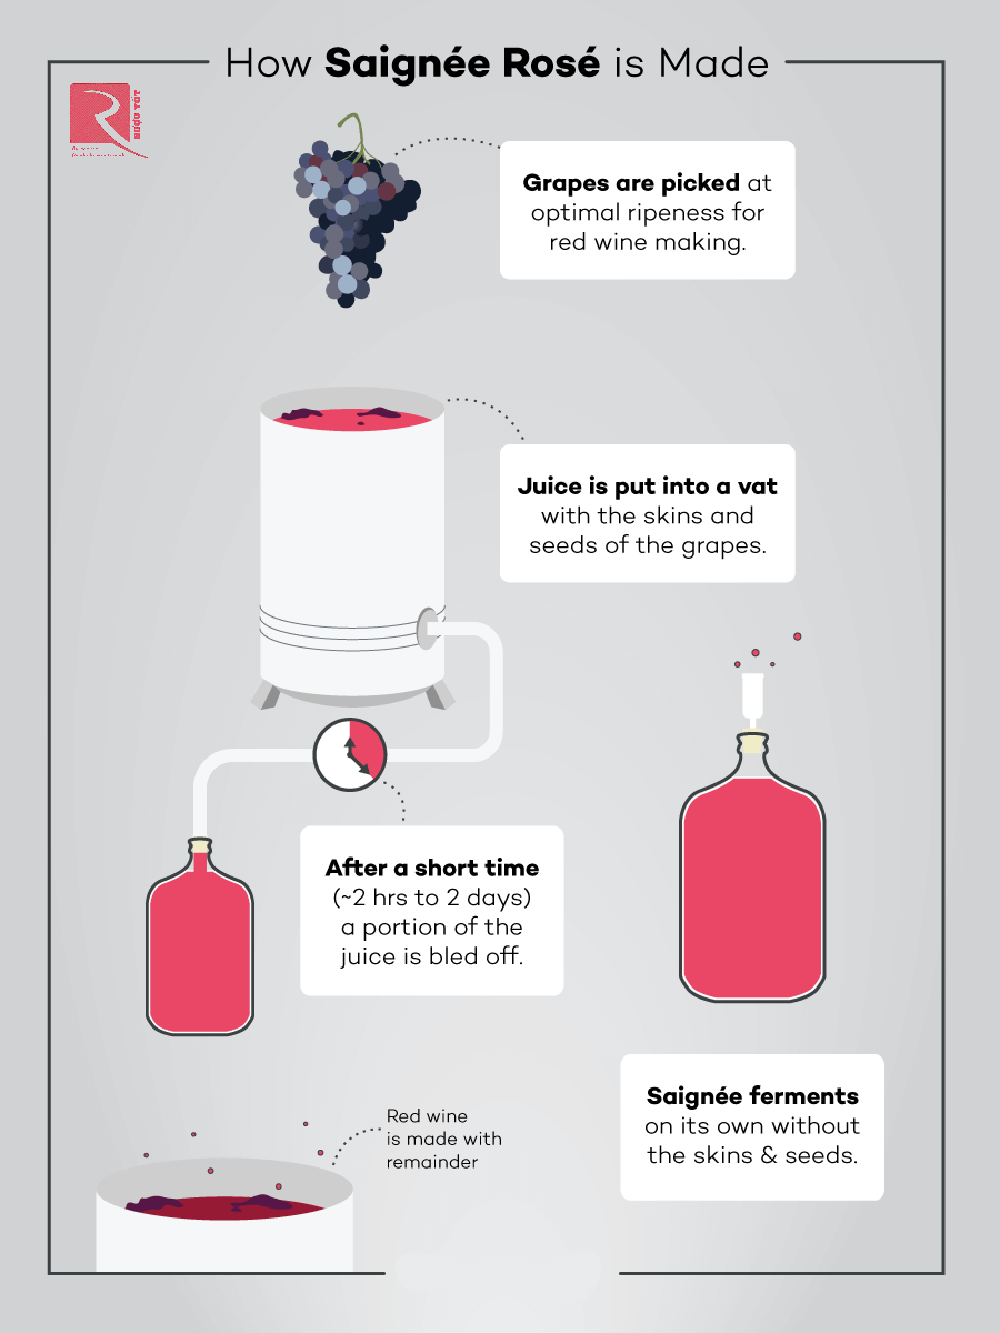 Phương pháp Saignée Rosé được sản xuất như thế nào?